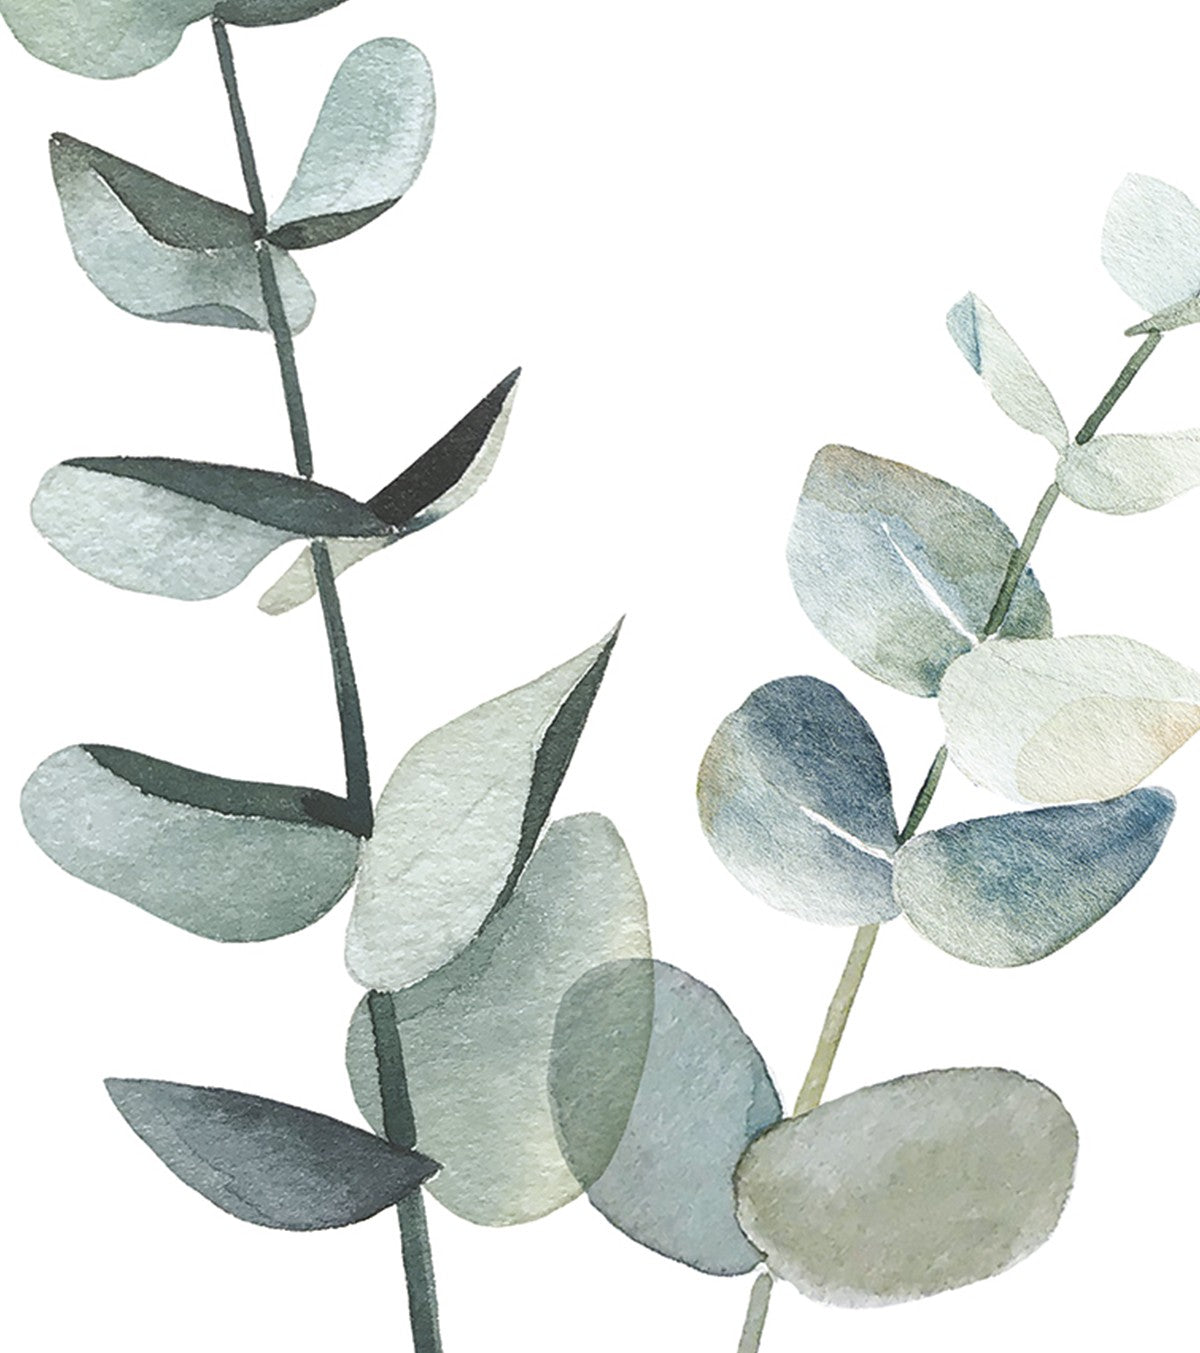 GREENERY - Children's poster - Eucalyptus stems